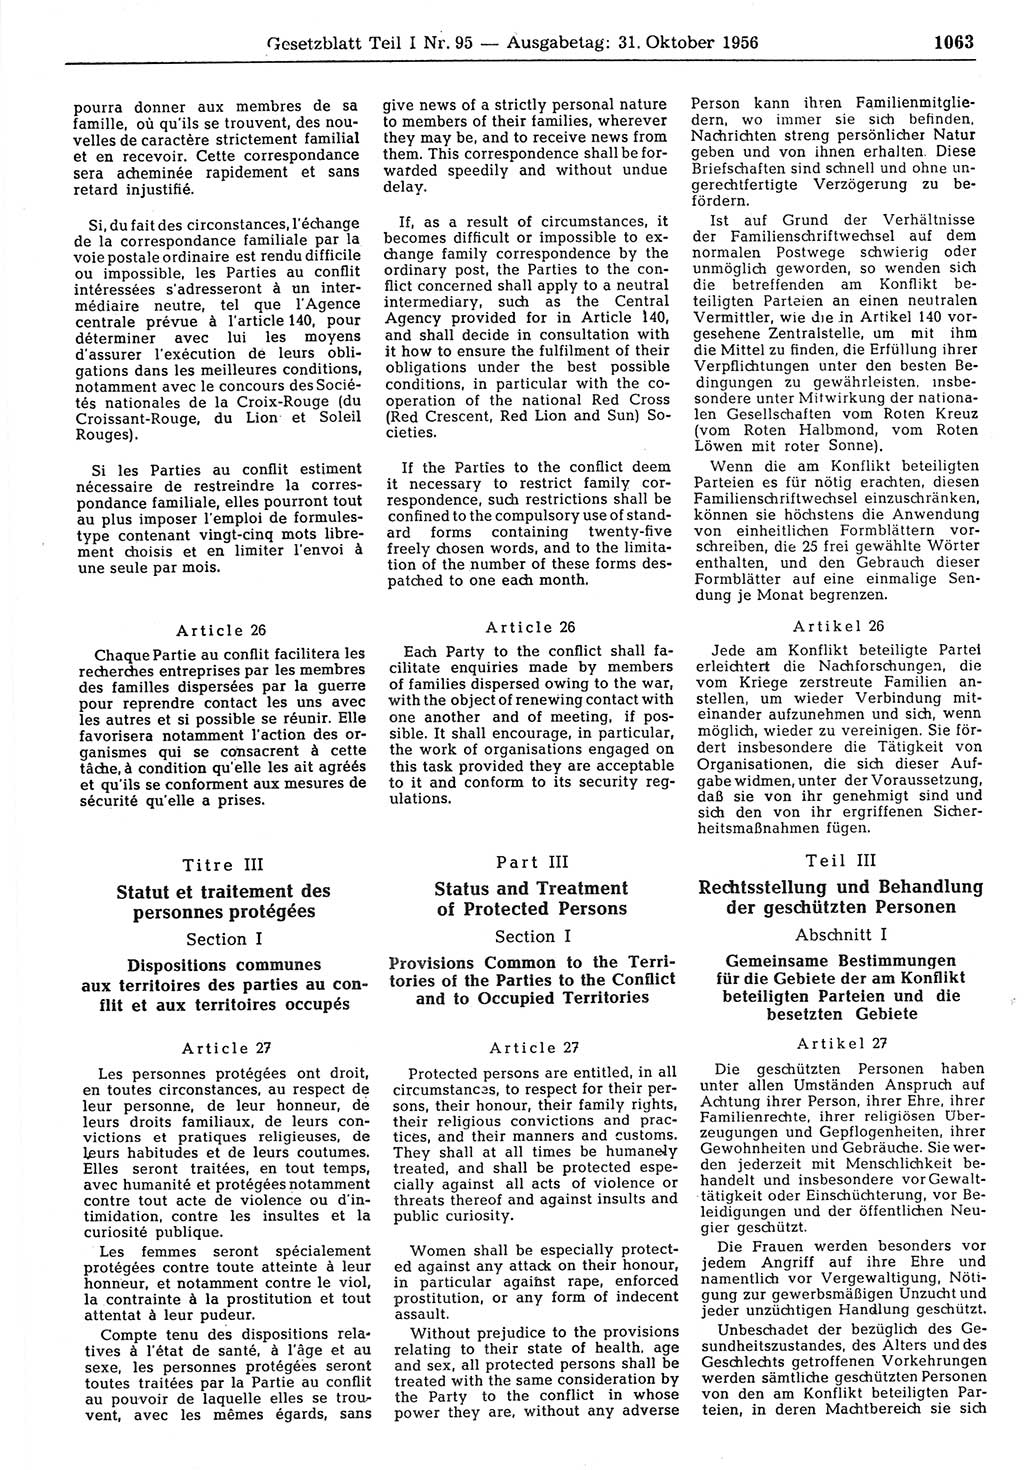 Gesetzblatt (GBl.) der Deutschen Demokratischen Republik (DDR) Teil Ⅰ 1956, Seite 1063 (GBl. DDR Ⅰ 1956, S. 1063)